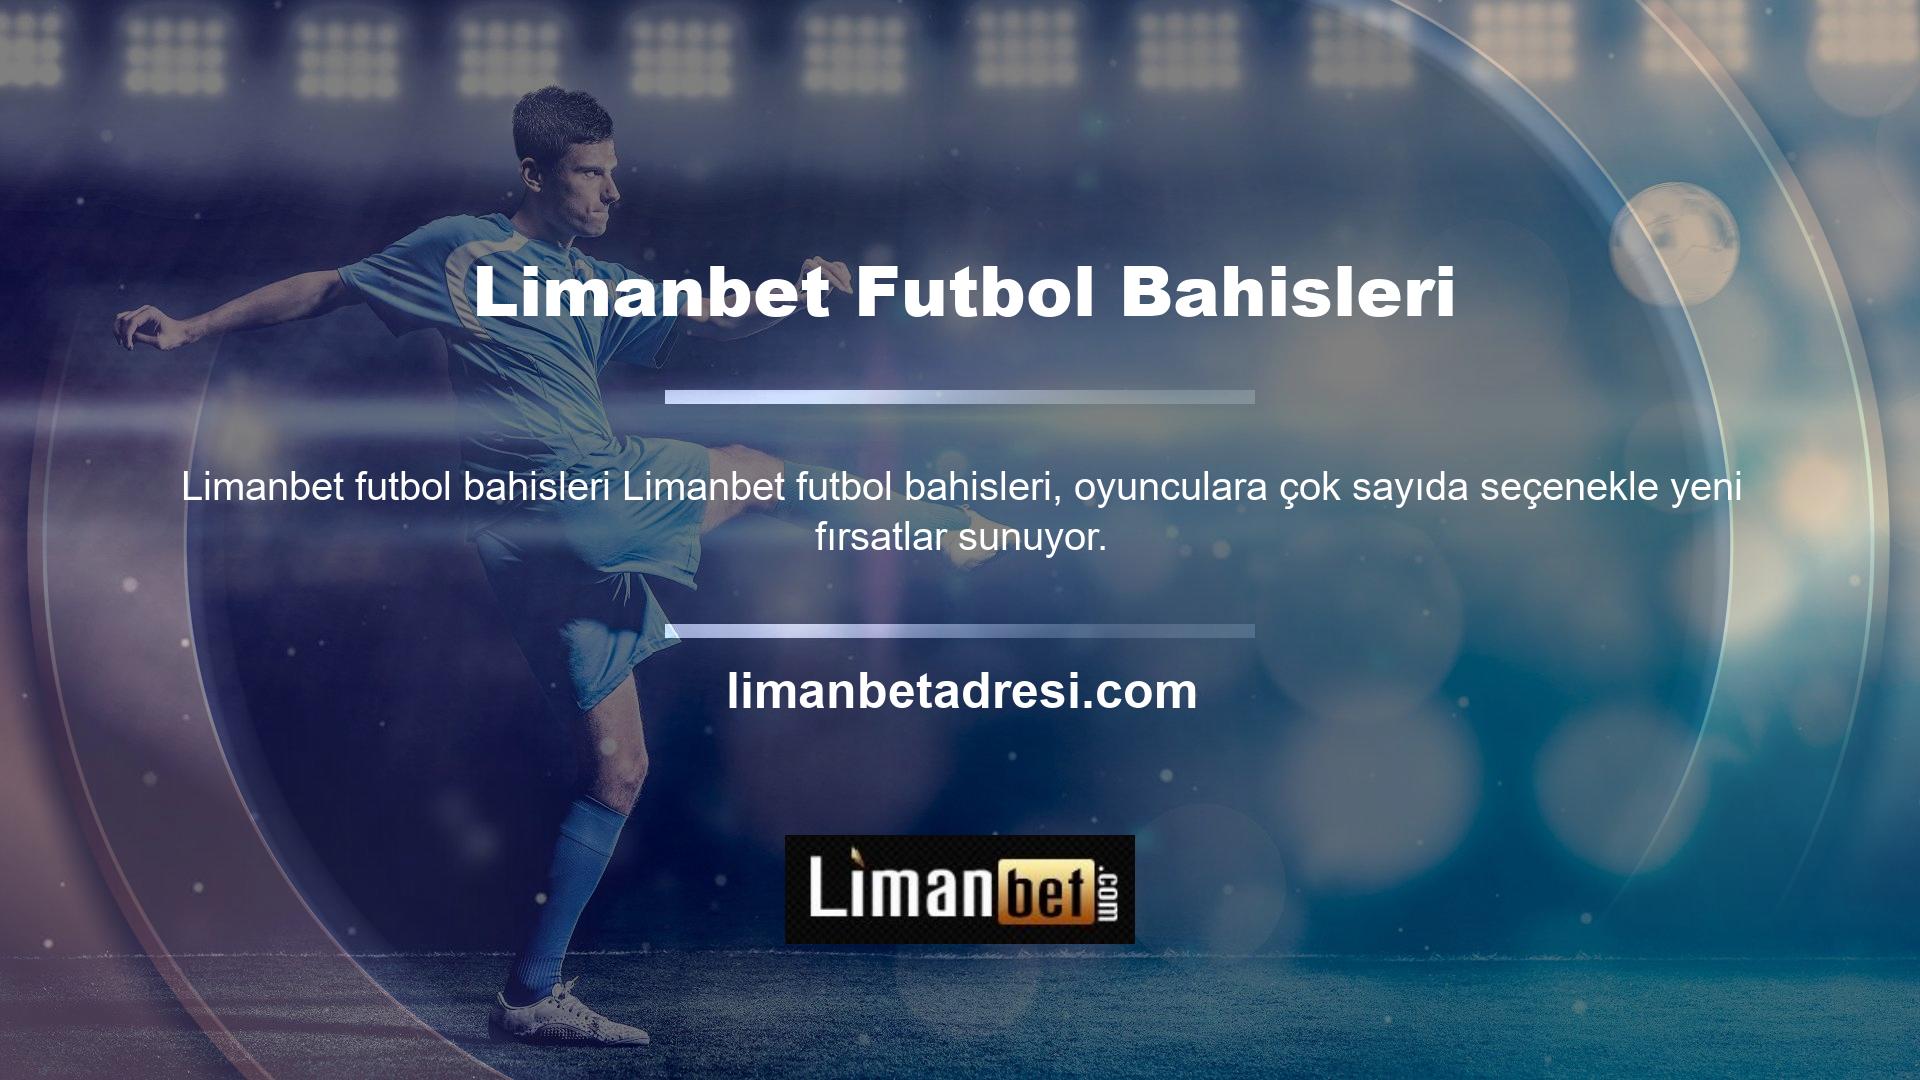 Futbol Bahisleri Limanbet, kaliteli canlı bahis siteleri işleten lisanslı ve akredite bir şirkettir